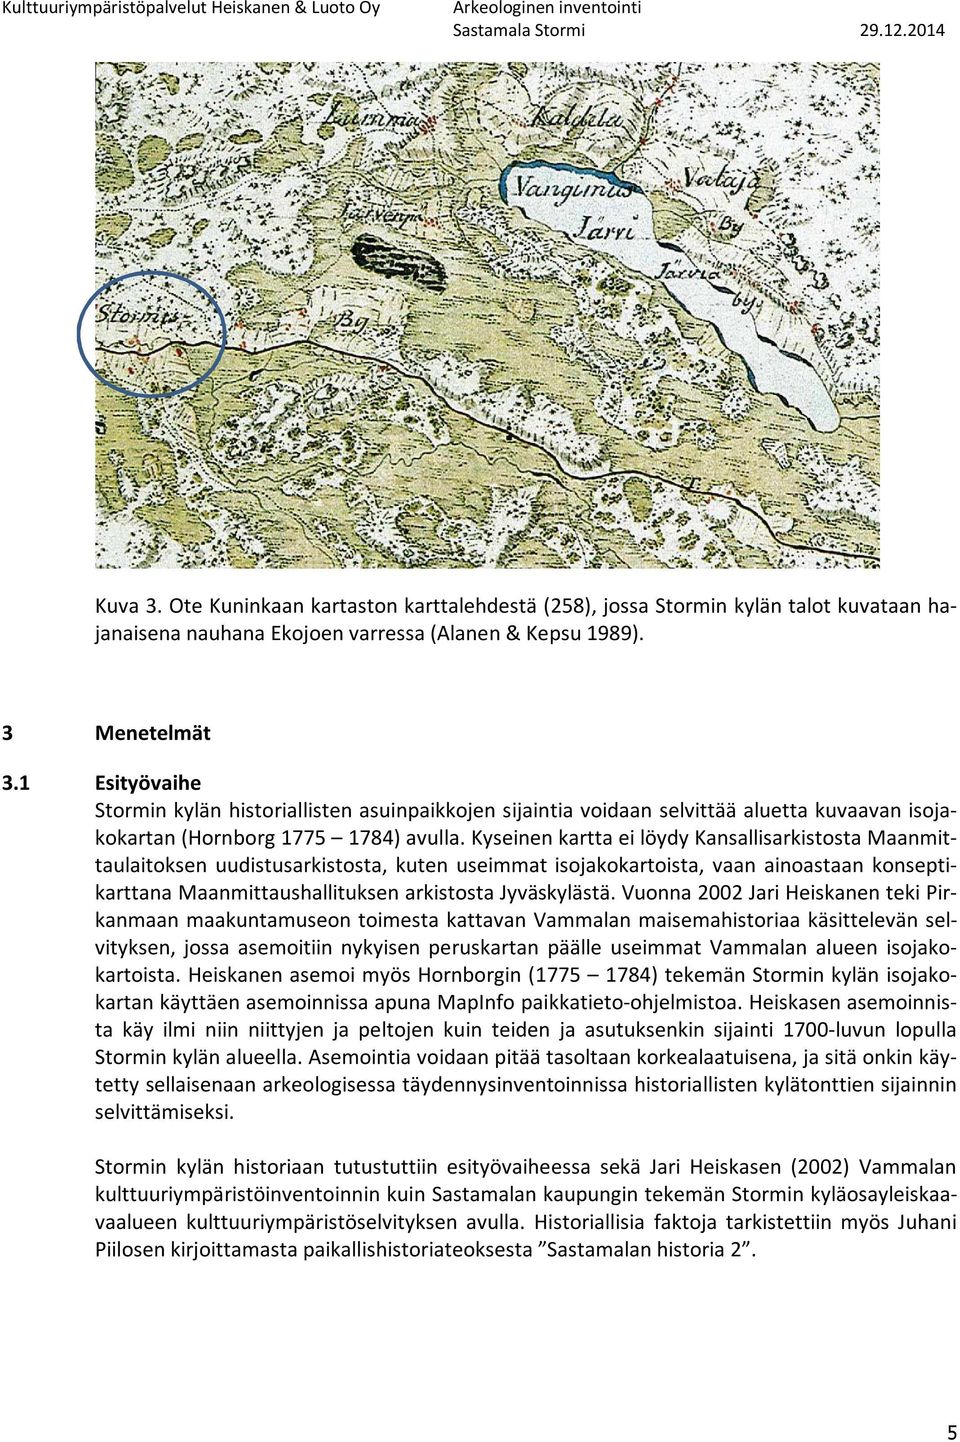 Kyseinen kartta ei löydy Kansallisarkistosta Maanmittaulaitoksen uudistusarkistosta, kuten useimmat isojakokartoista, vaan ainoastaan konseptikarttana Maanmittaushallituksen arkistosta Jyväskylästä.